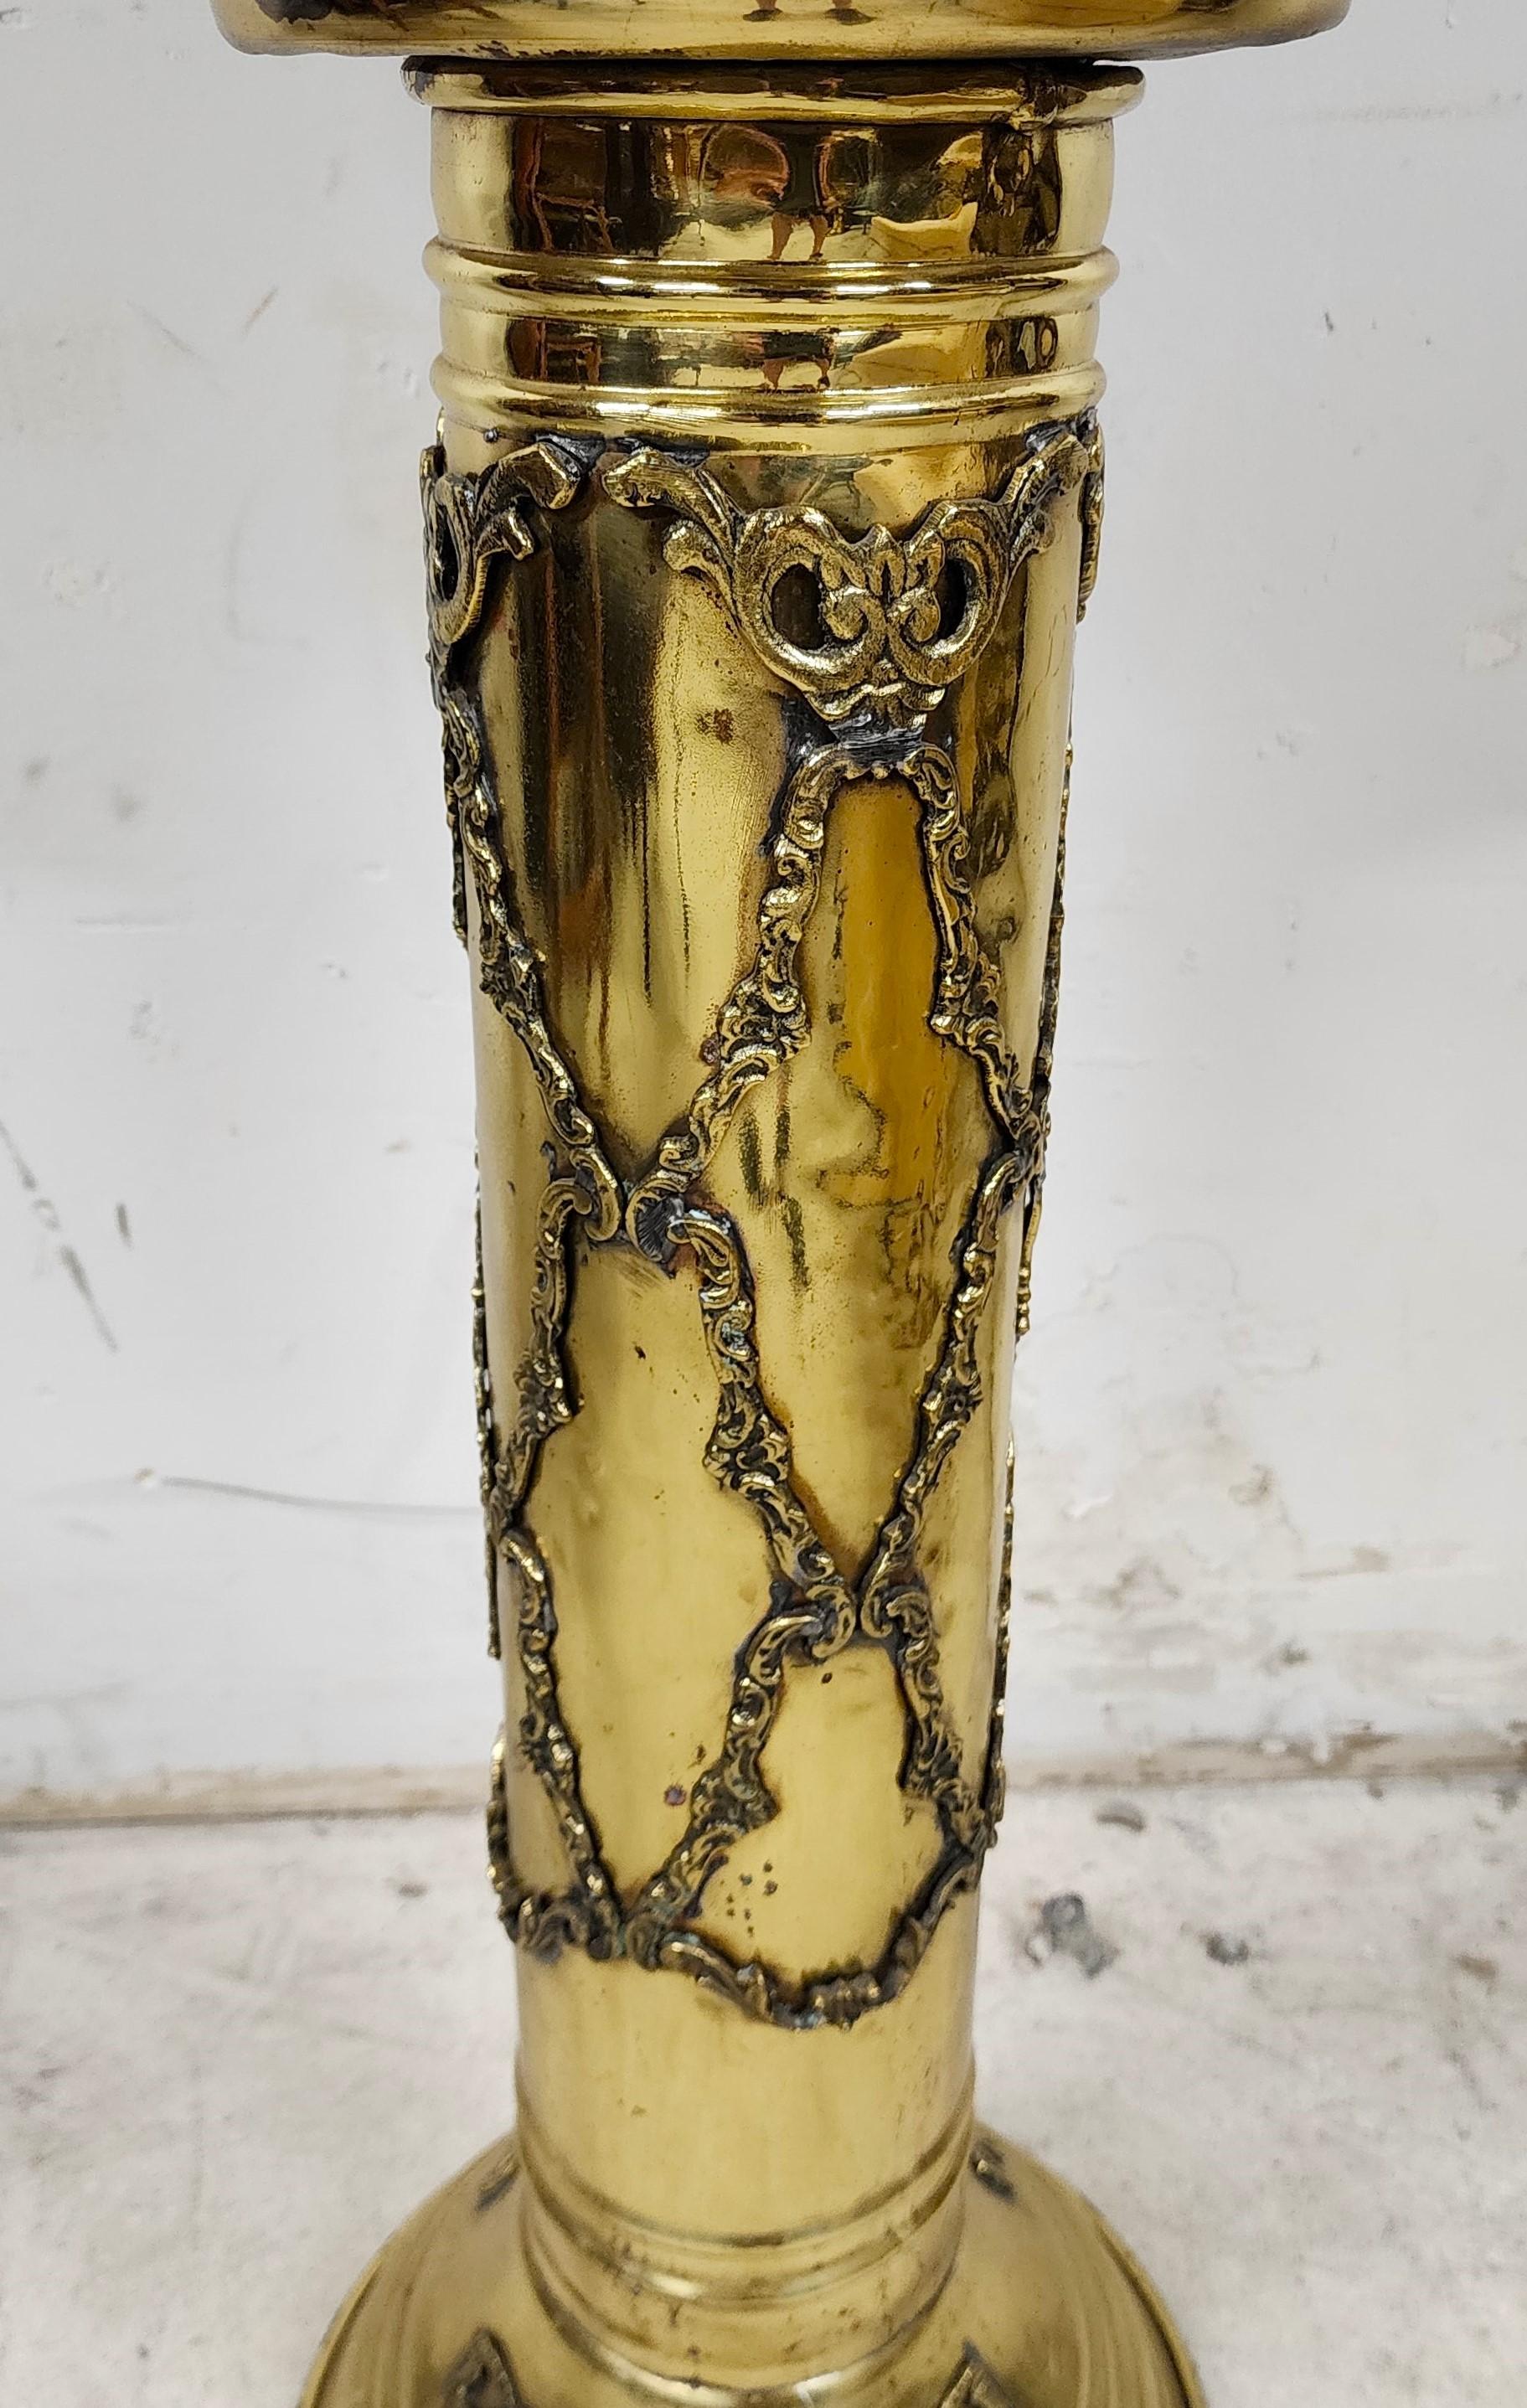 Antique Ornate Pedestal Brass Planter Stands, Set of 2 For Sale 7